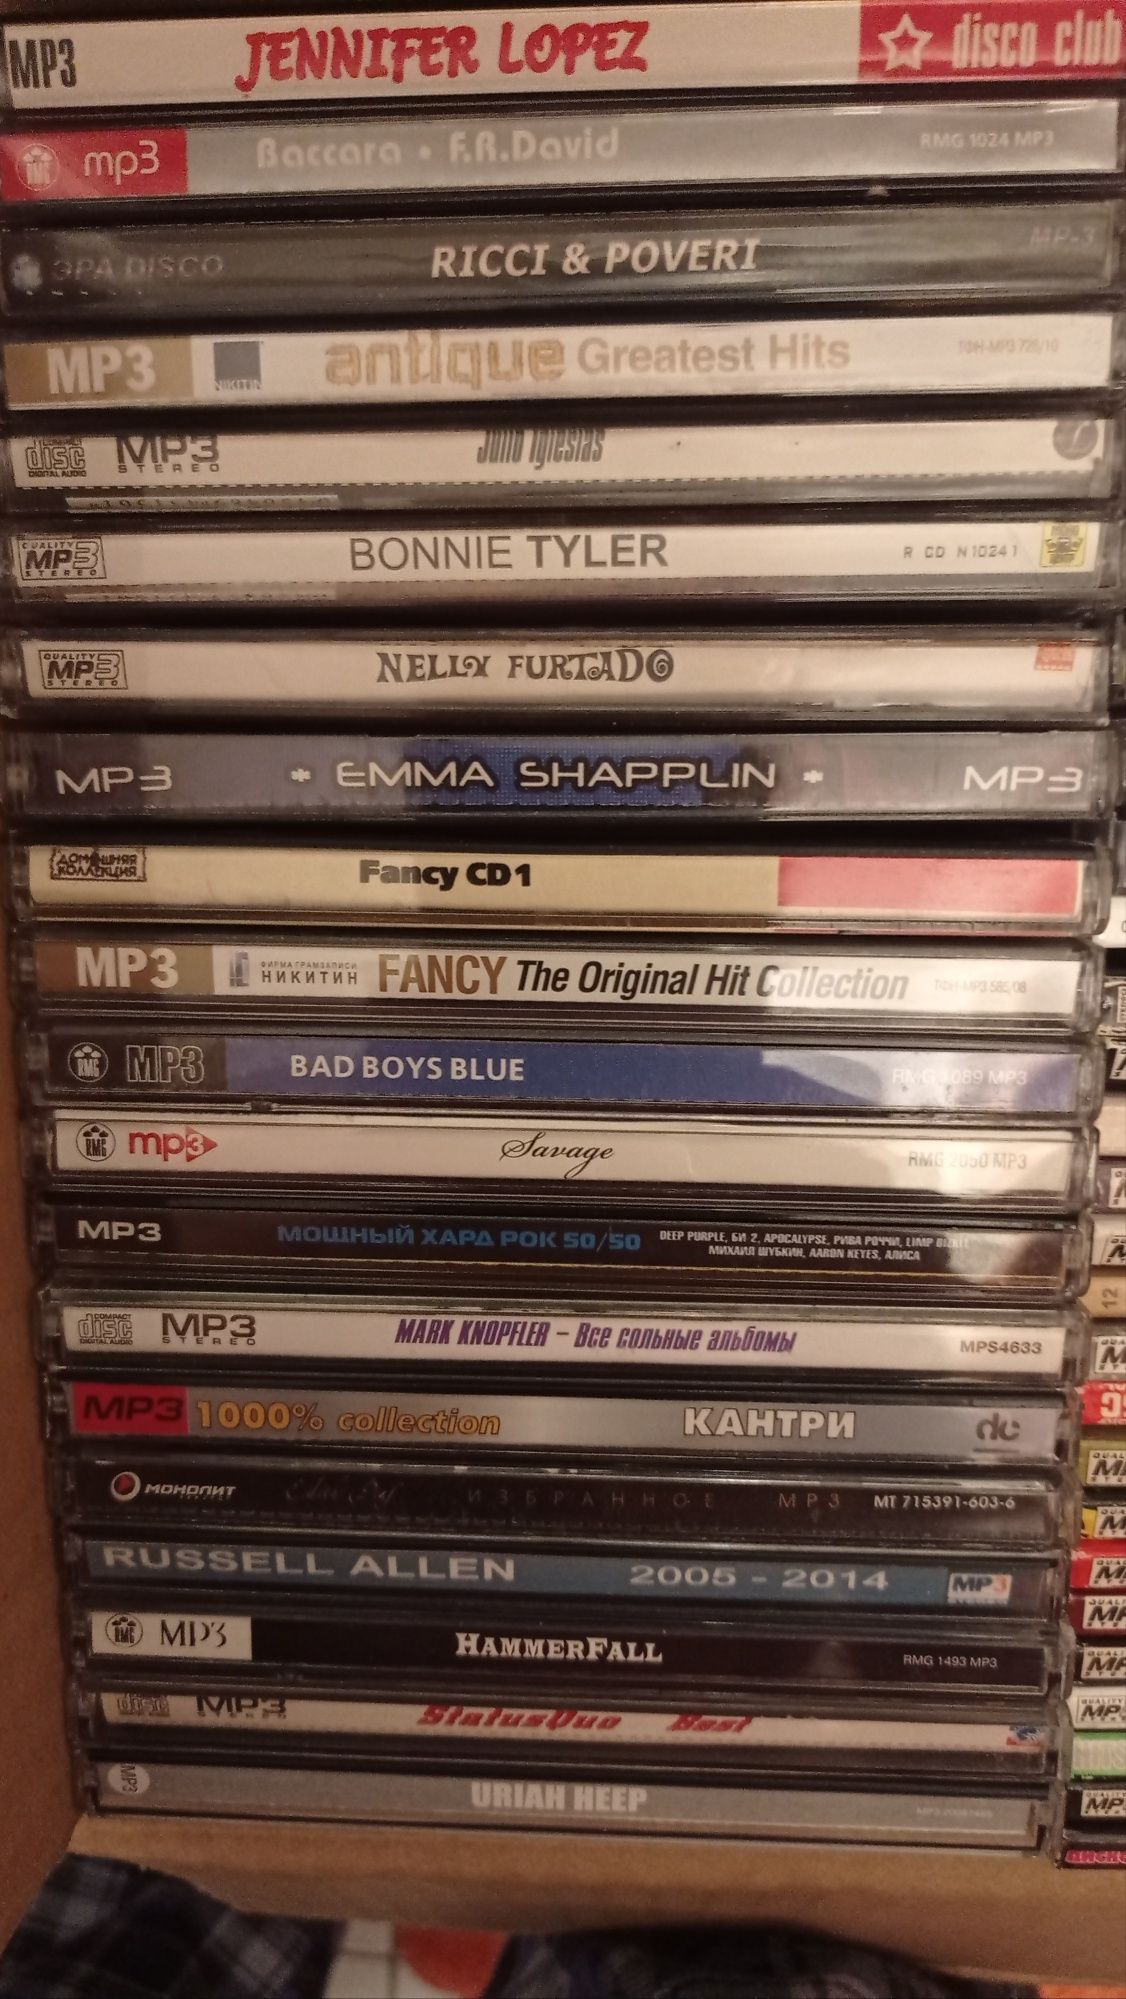 Музыкальные диски формата MP-3 в ассортименте